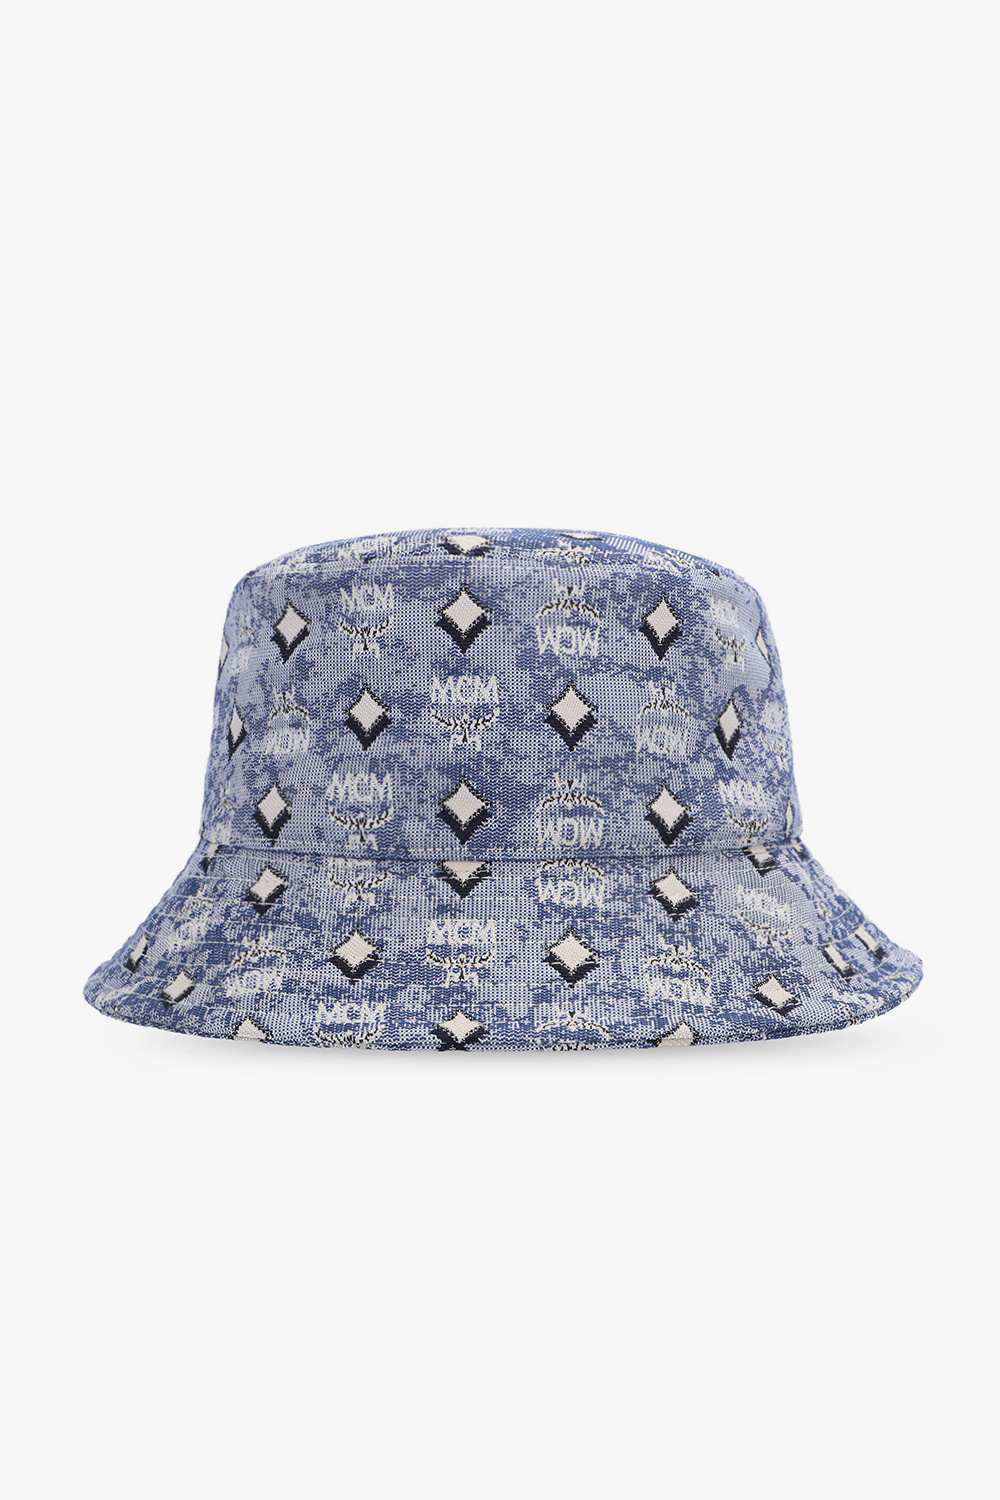 IetpShops Fit hat - Seattle Kraken MCM Fanatics Patterned bucket Blue Flex Australia - Hat Defender